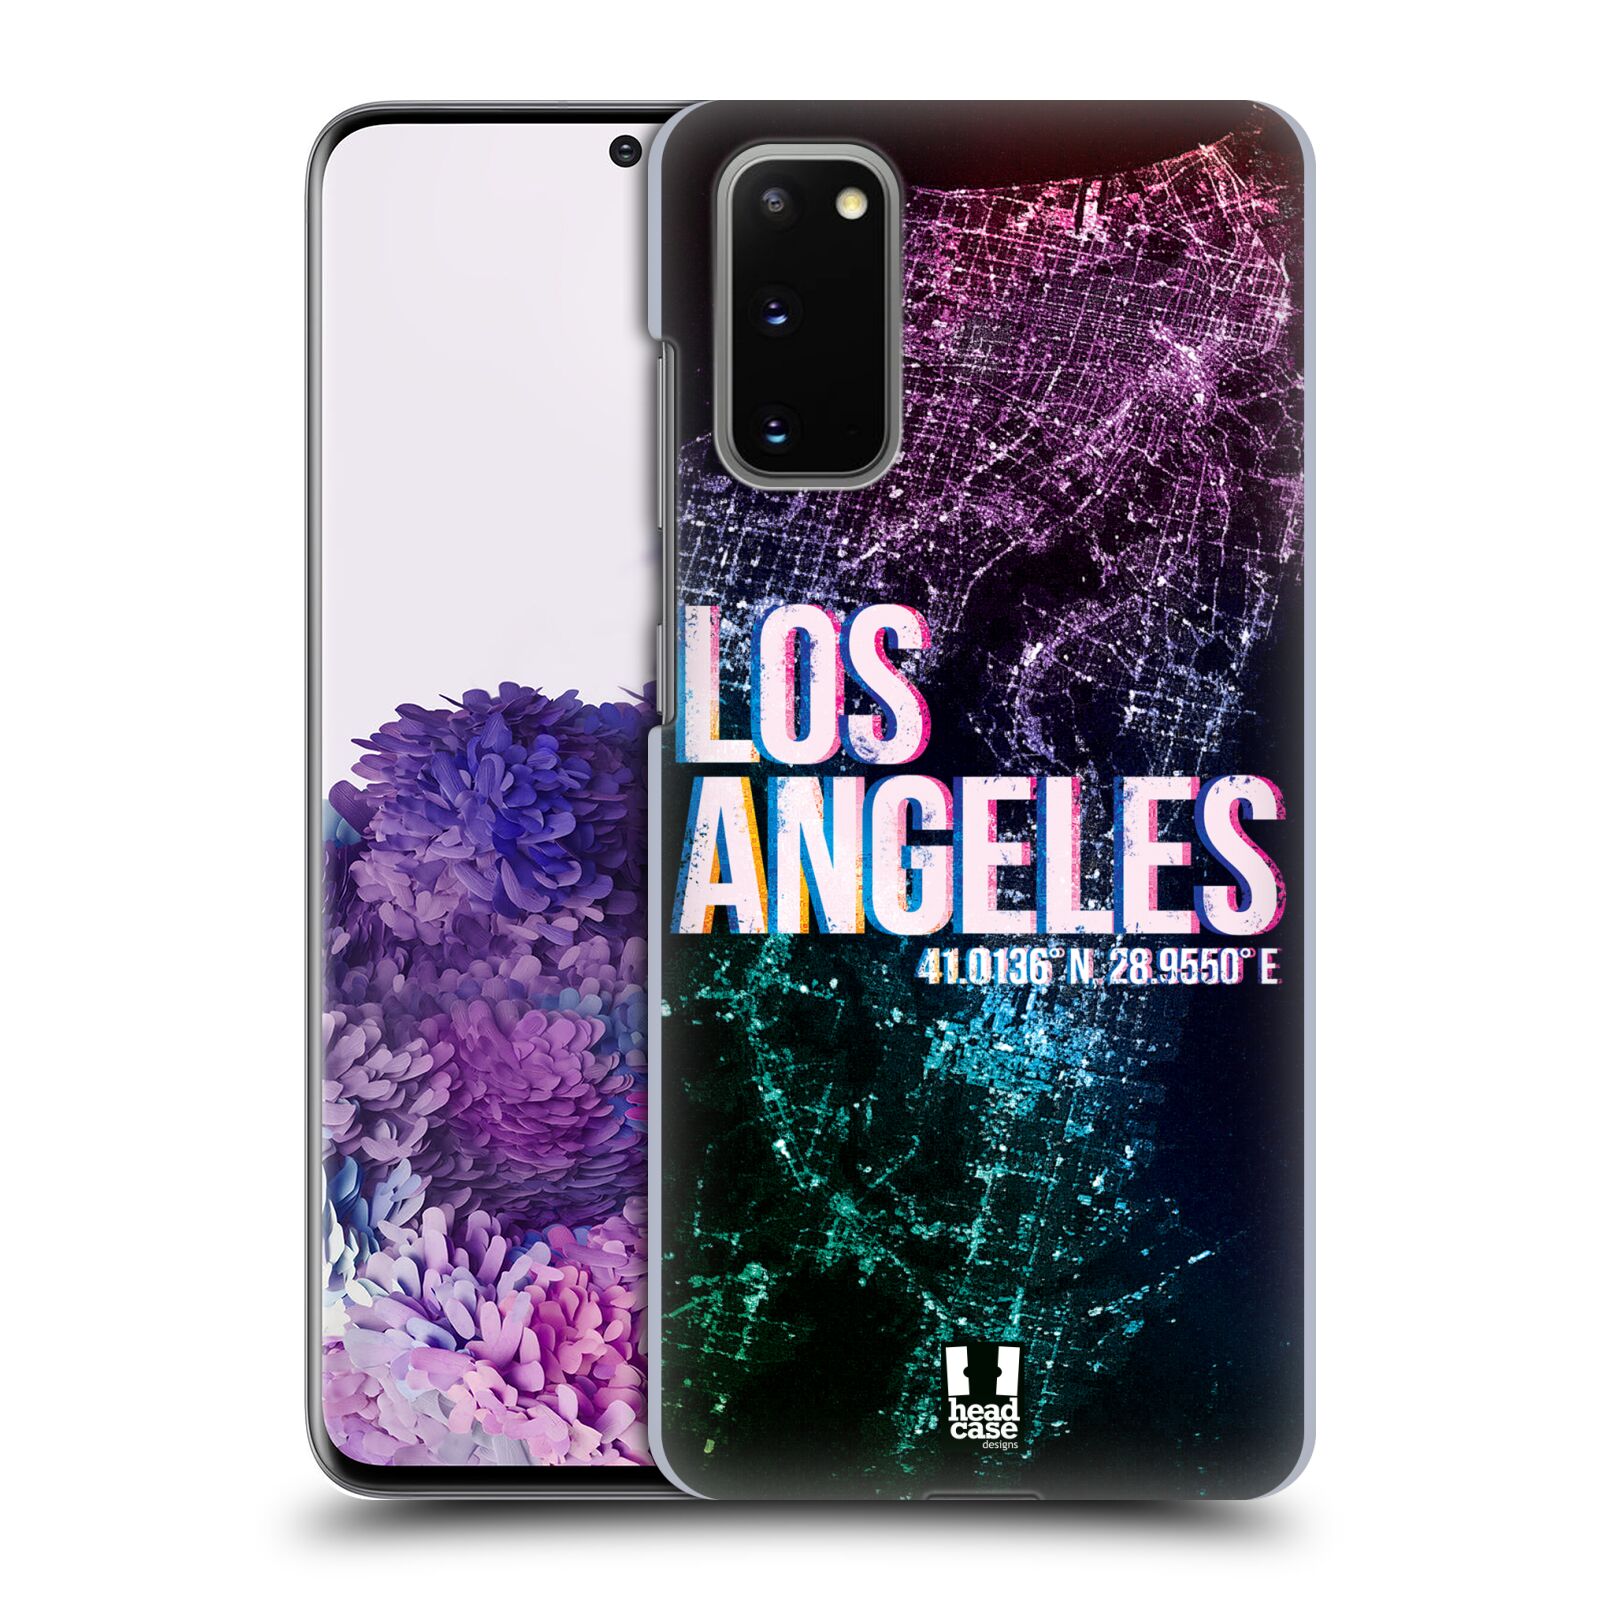 Pouzdro na mobil Samsung Galaxy S20 - HEAD CASE - vzor Světla známých měst, Satelitní snímky fialová USA, LOS ANGELES